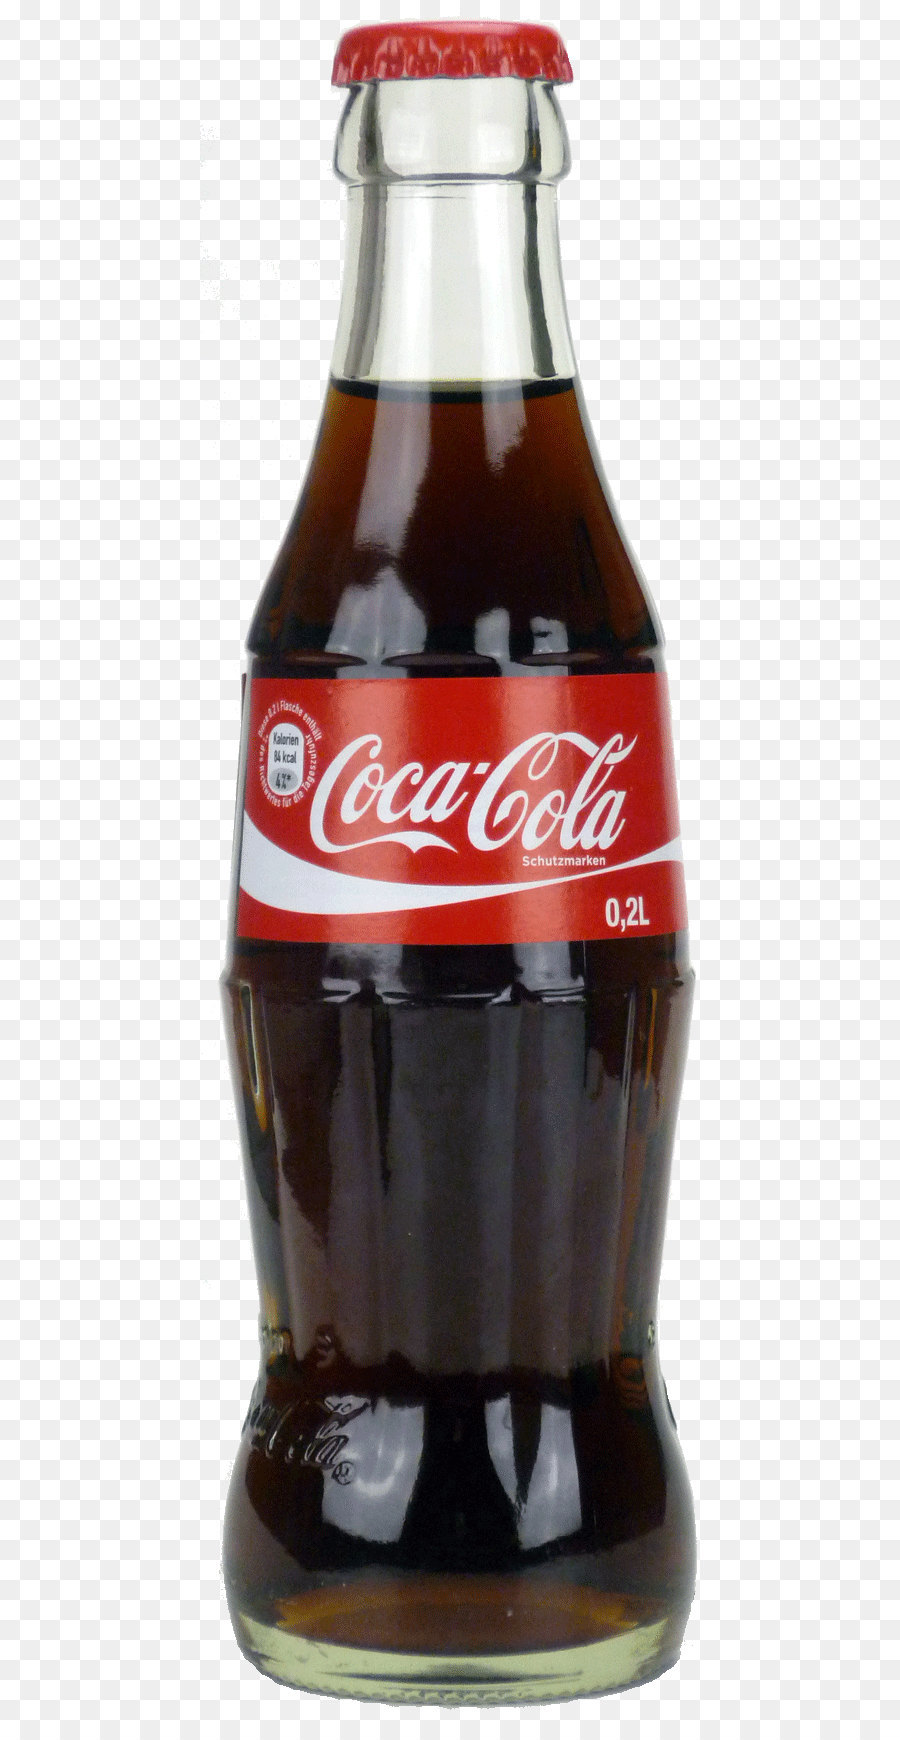 Illustration Coke bottle, Cok